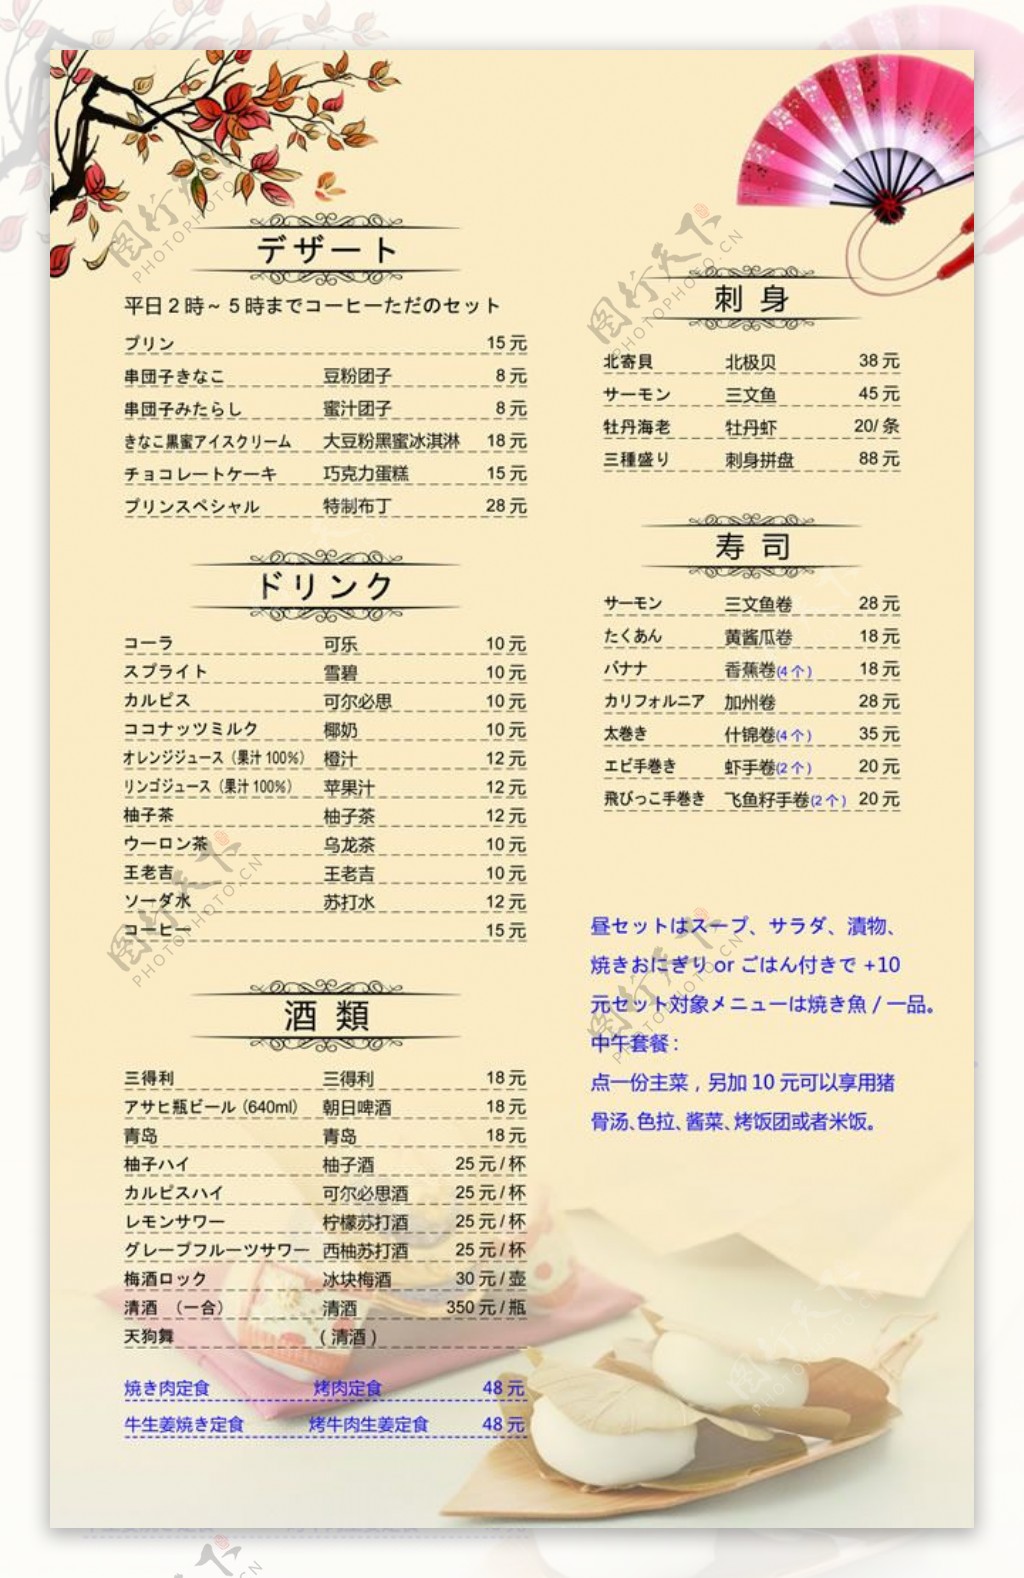 日本料理菜单PSD素材